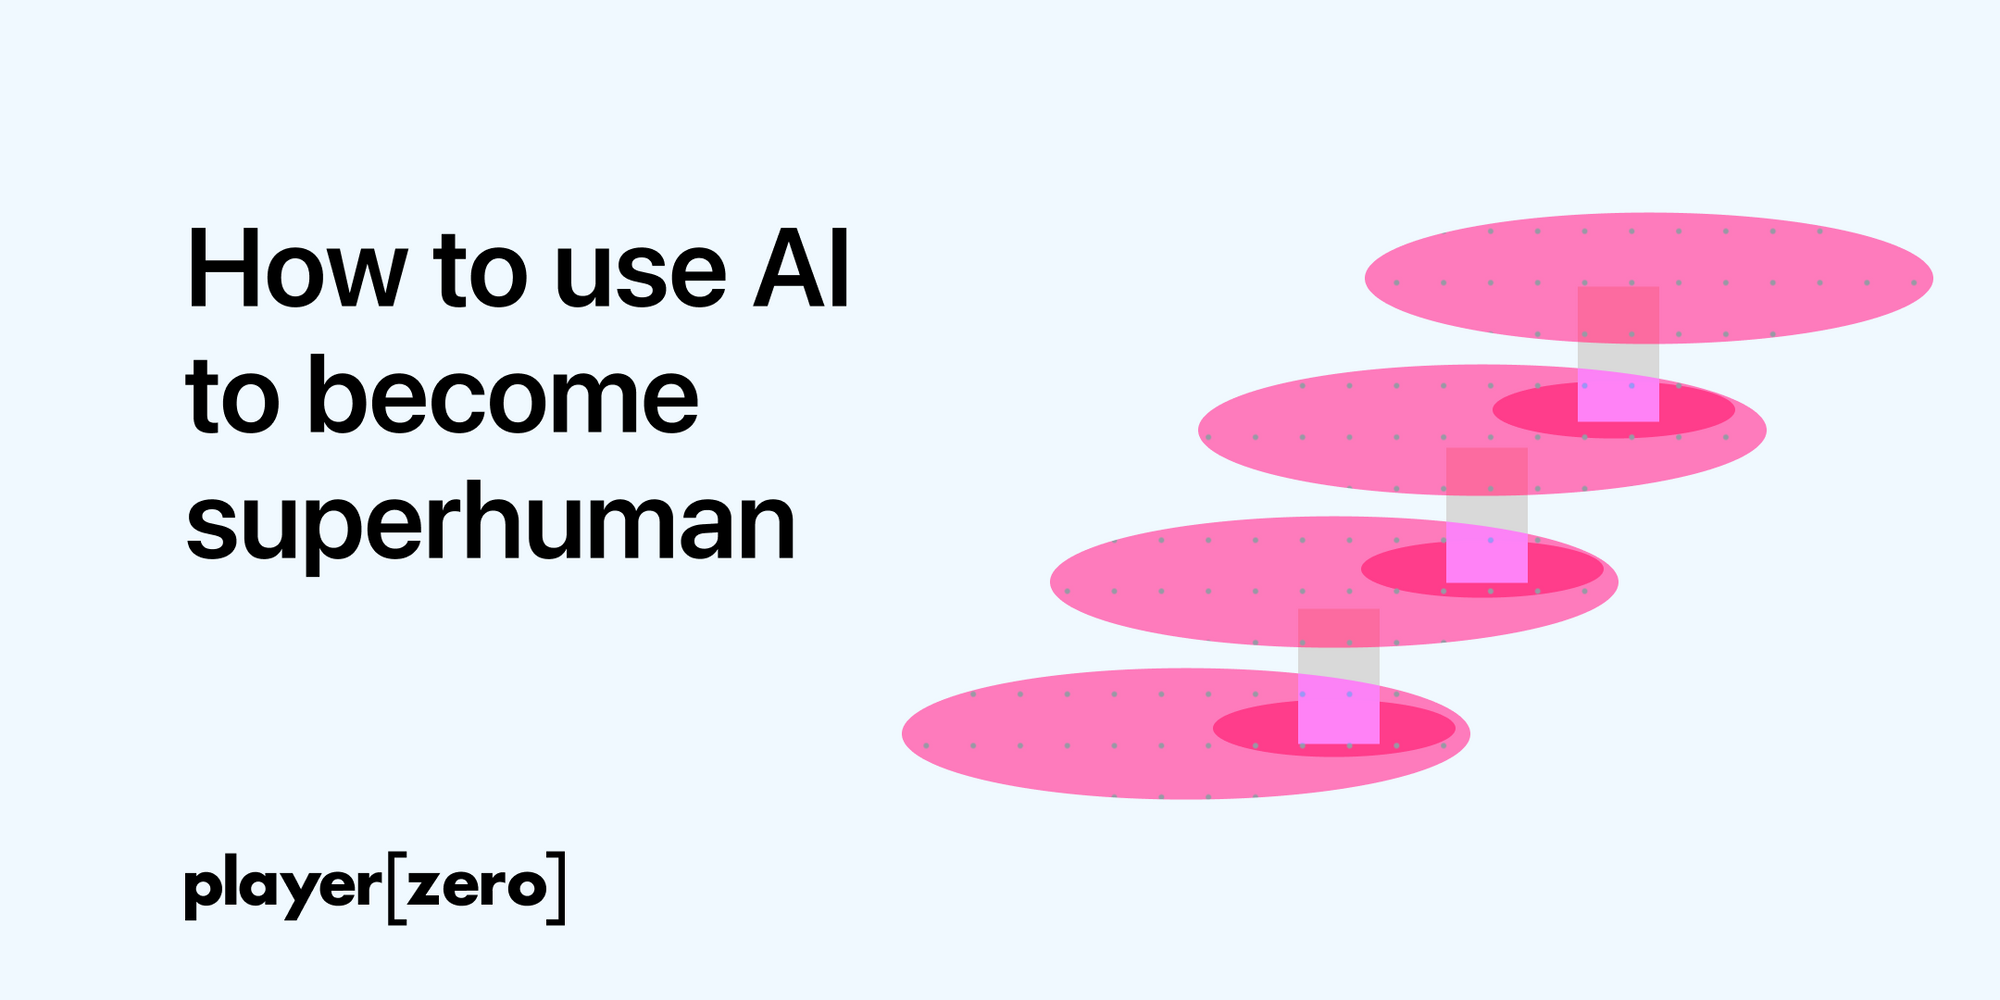 Cover Image for A new framework for AI adoption